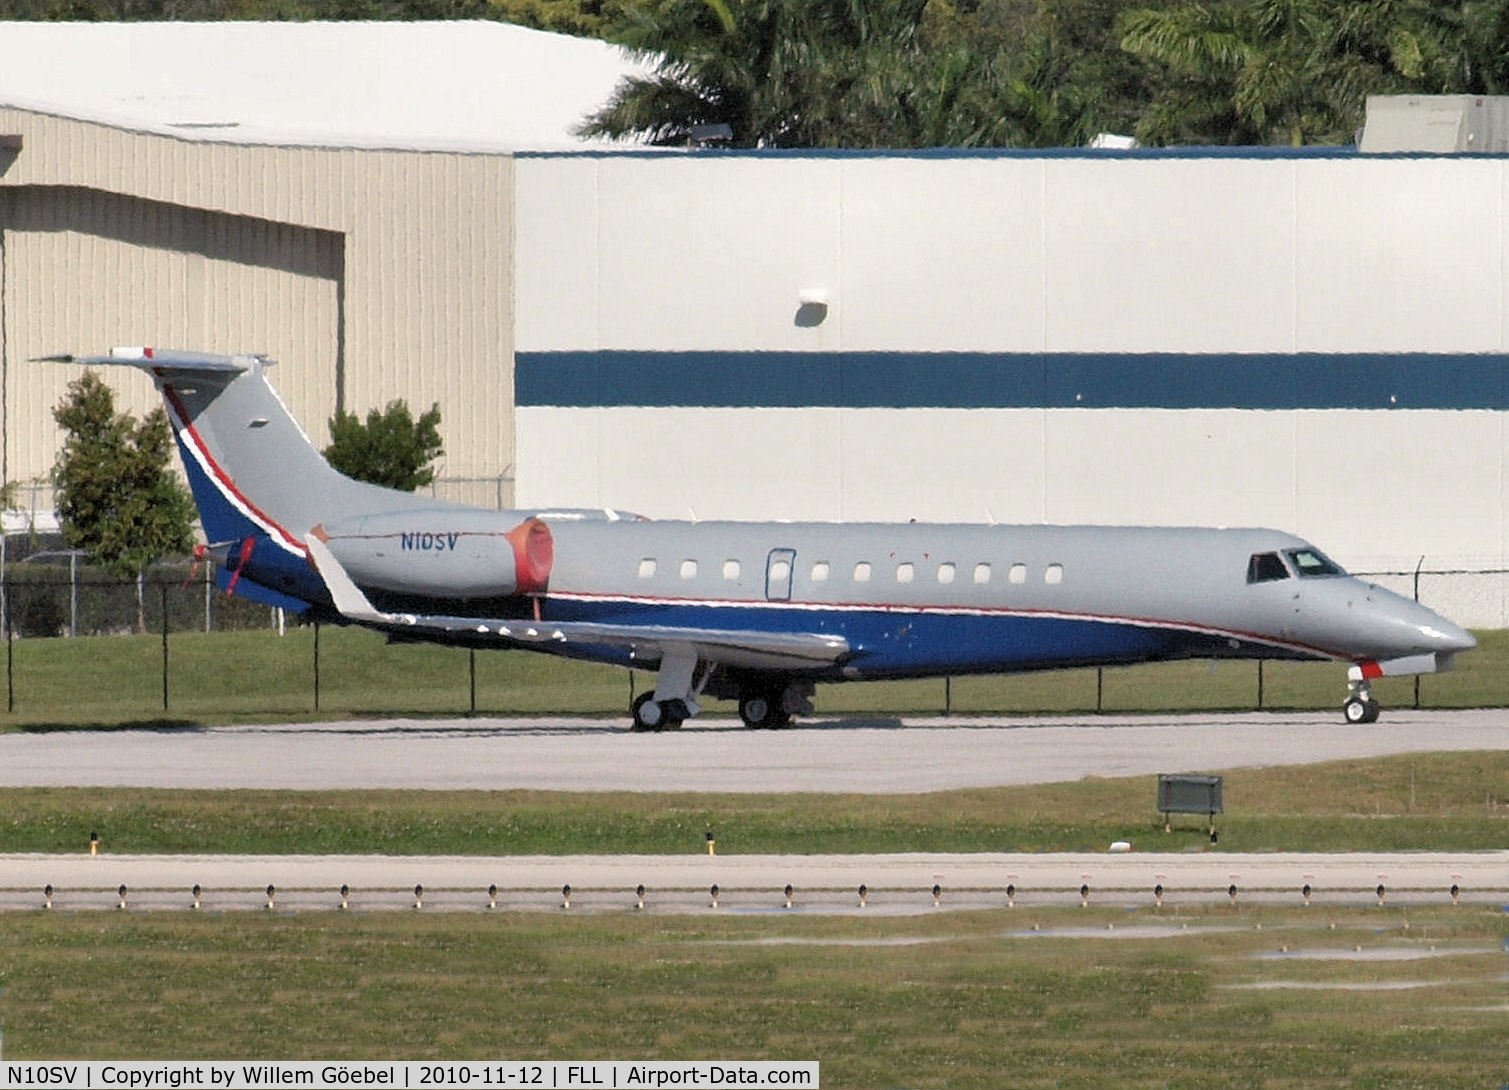 N10SV, 2006 Embraer EMB-135BJ Legacy C/N 14500974, Parking on the platform of FLL